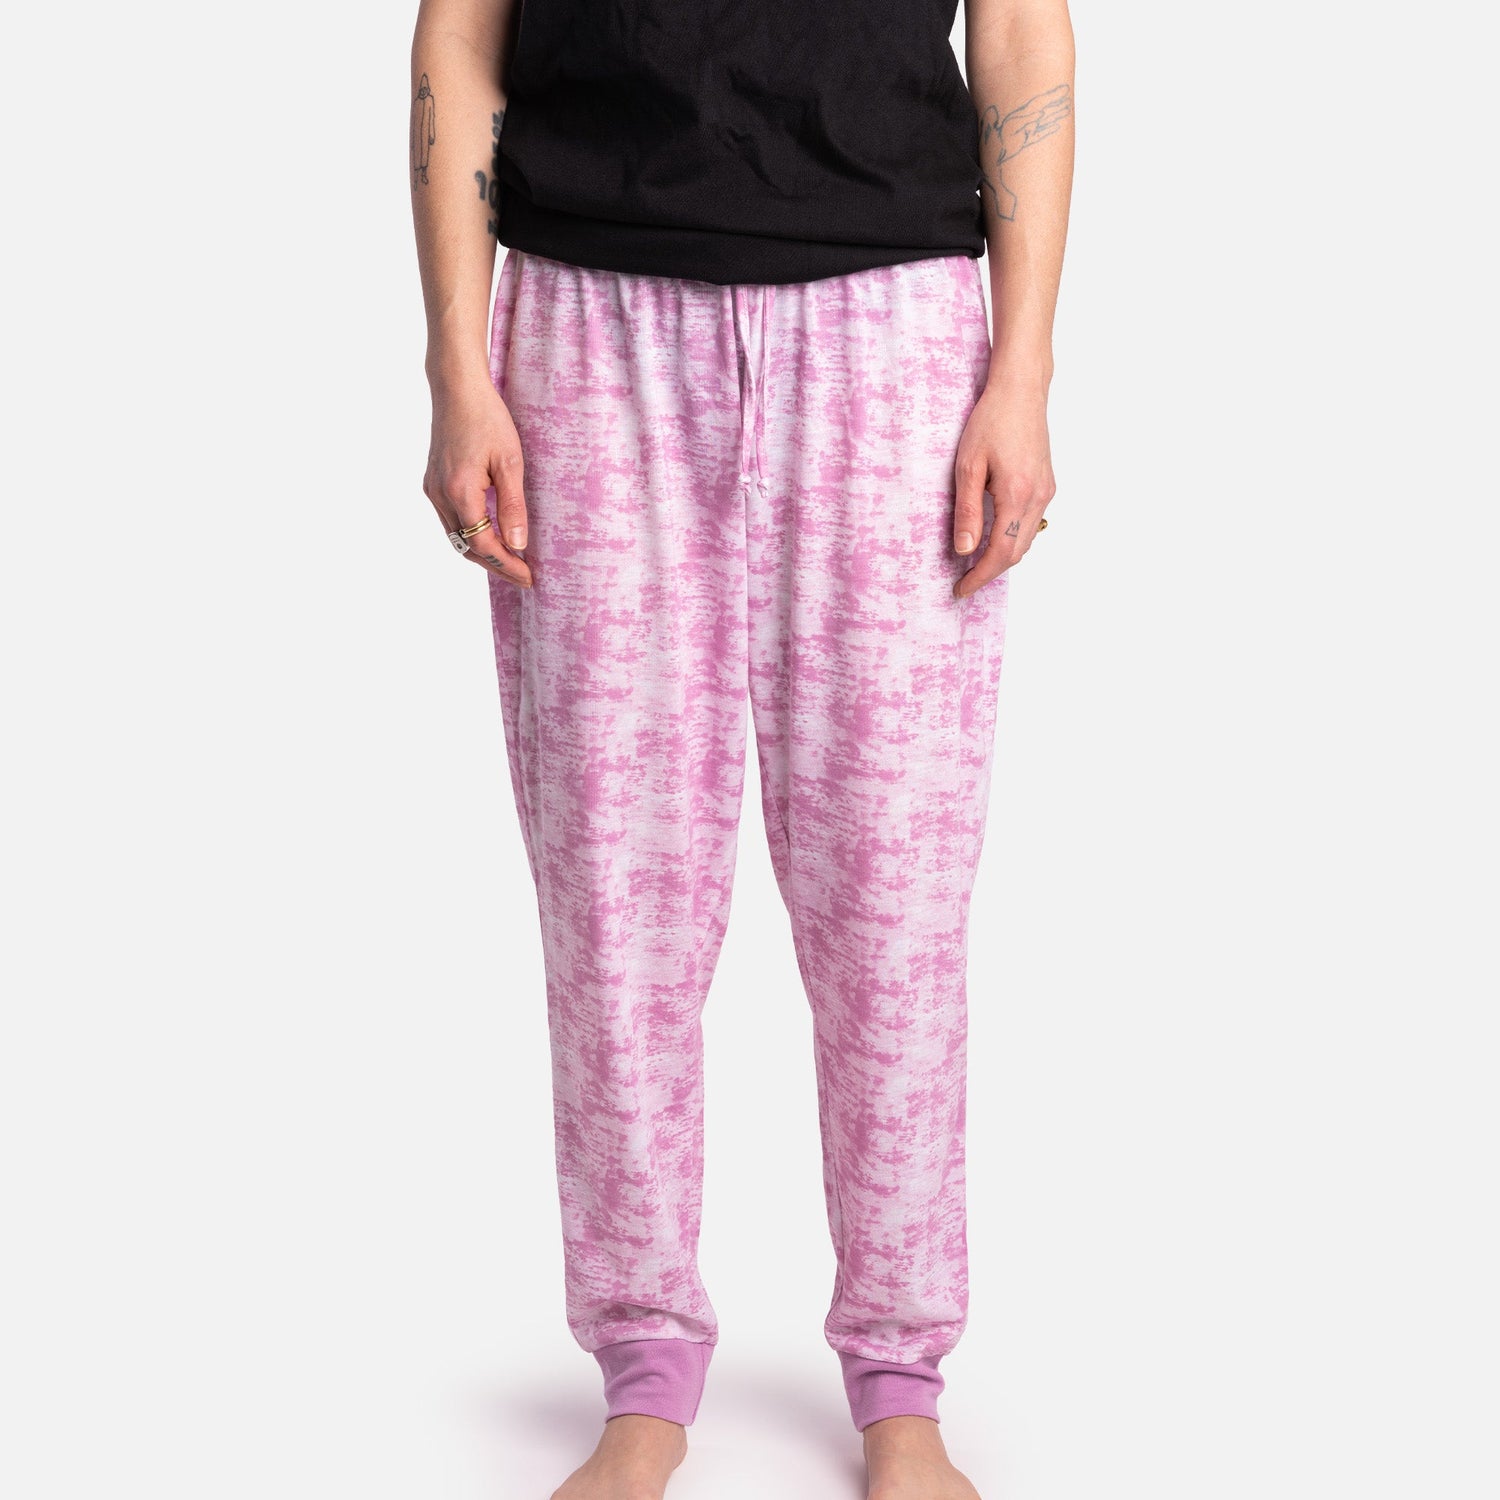 Matching Human & Dog Pajama - Pink Tie Dye - Silver Paw